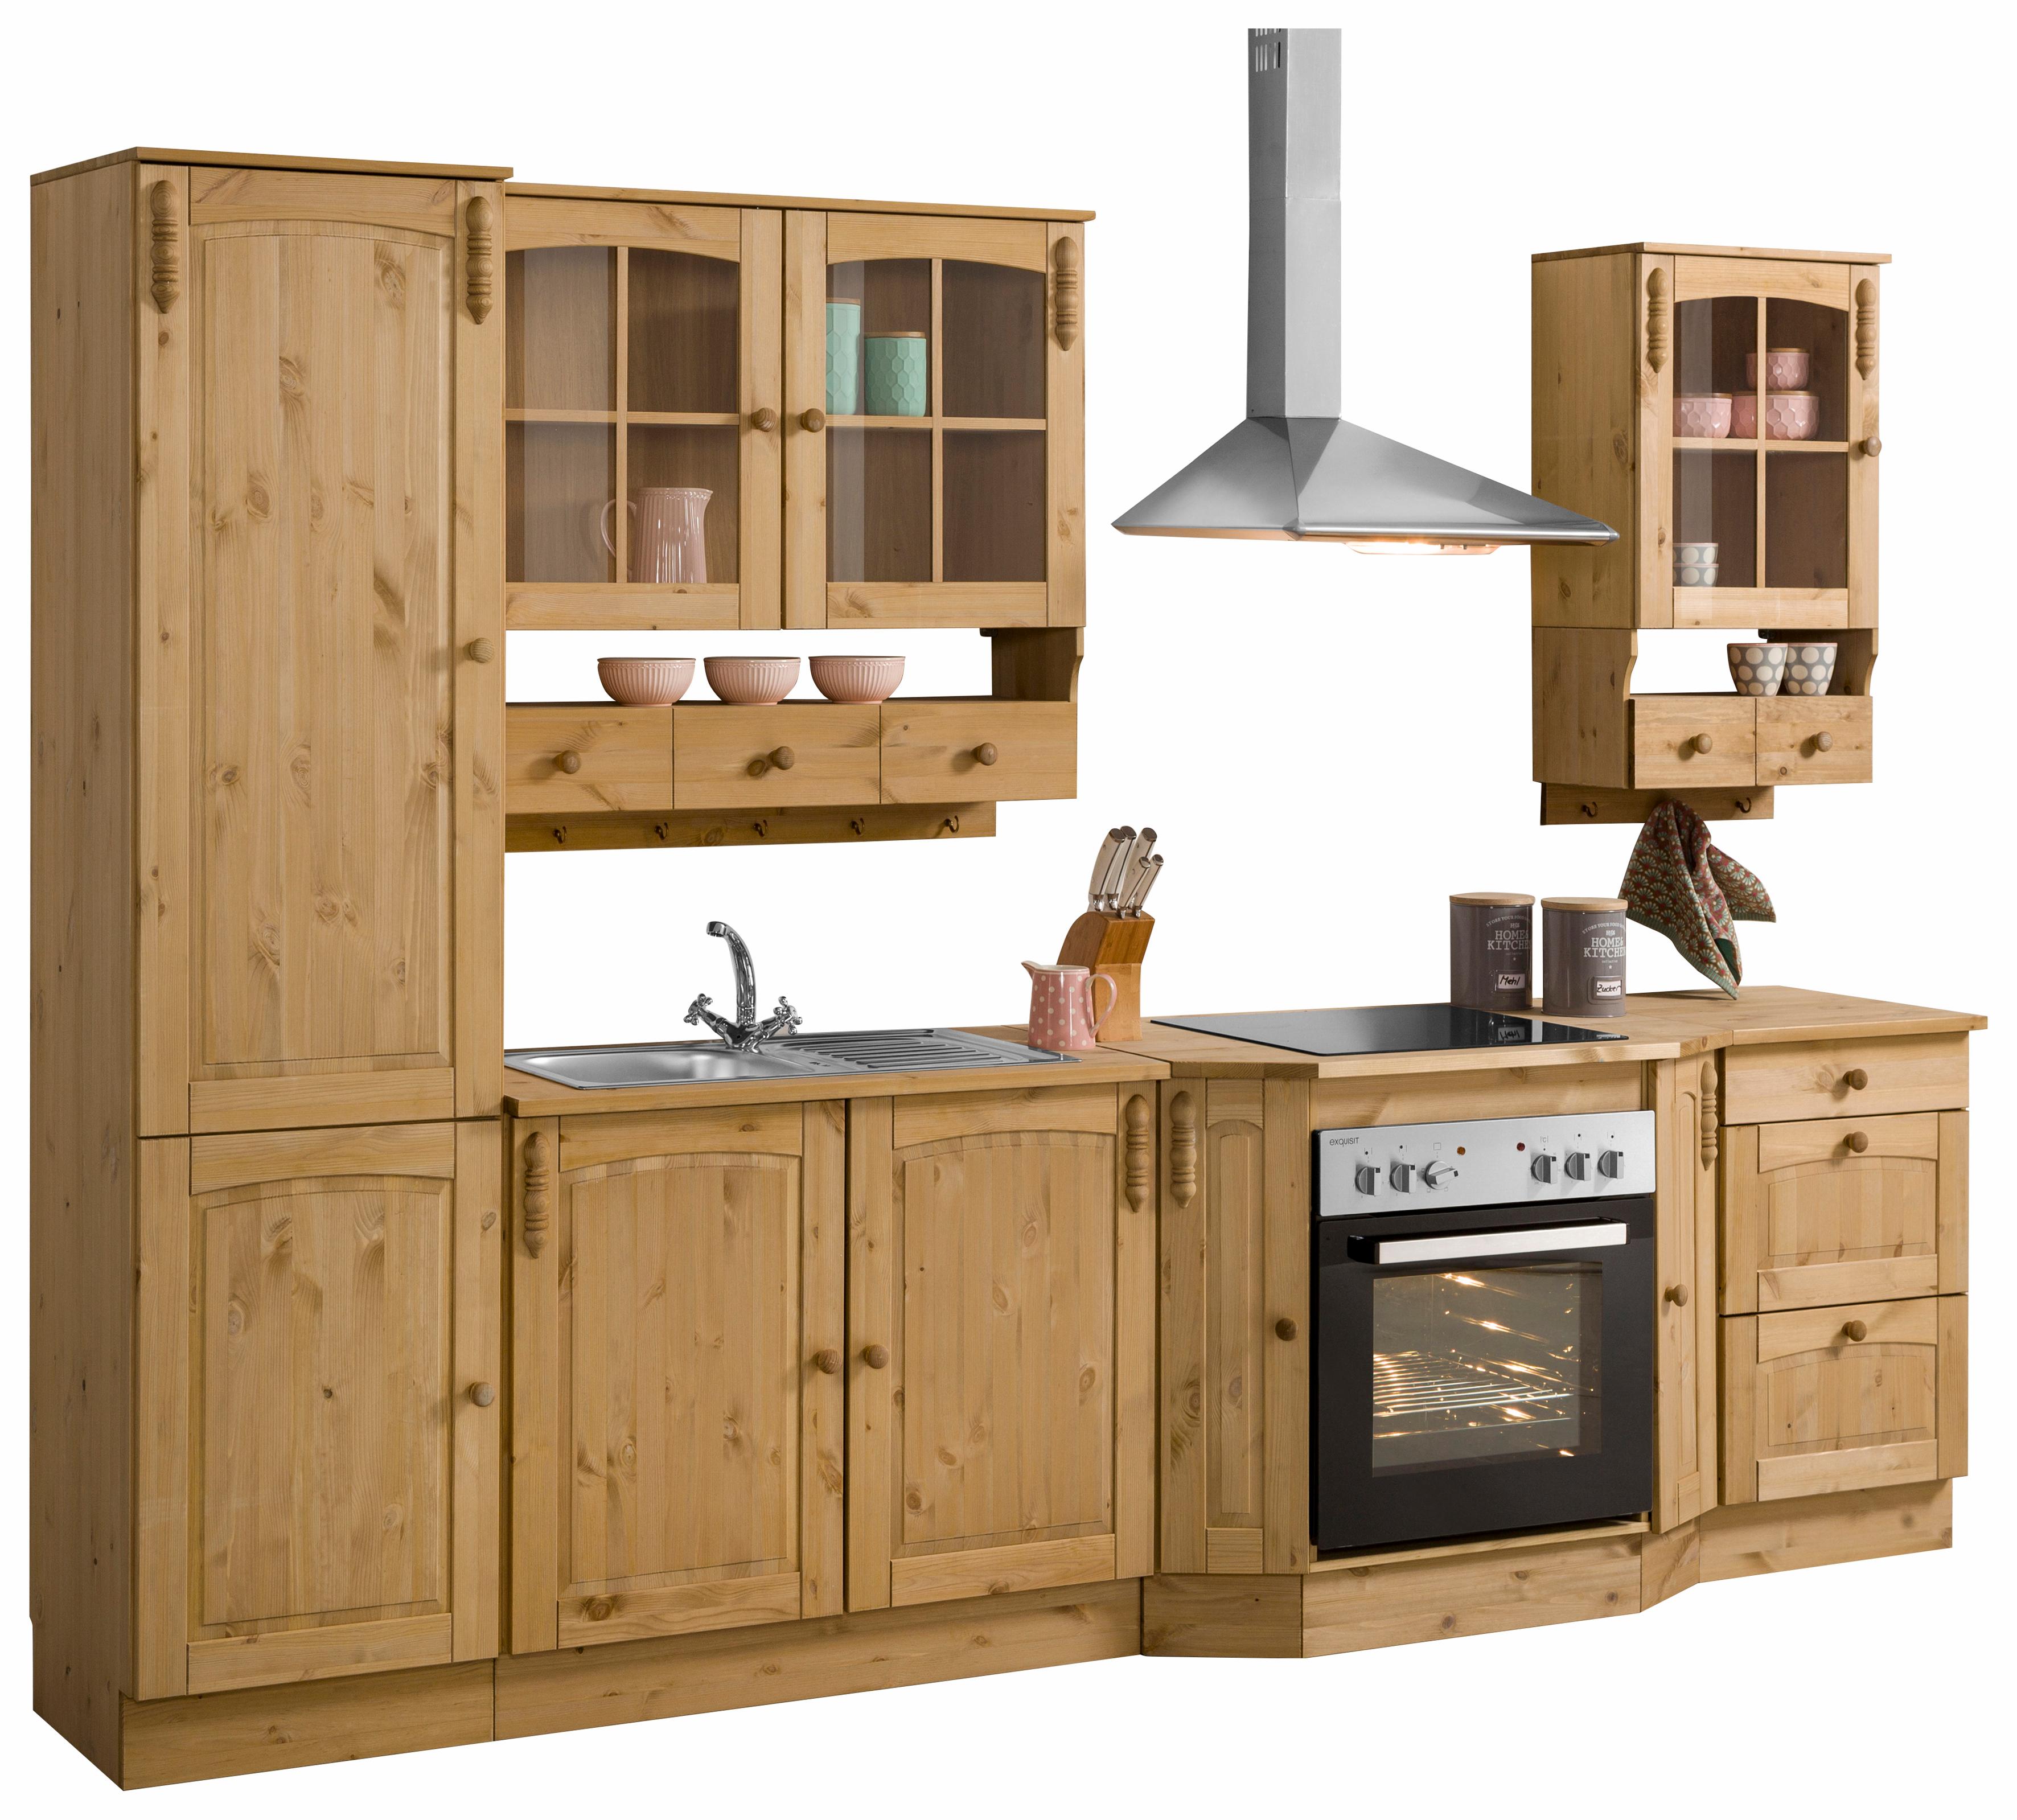 Preisvergleich für Home affaire Küchen-Set Sylt, ohne E-Geräte, Breite 300  cm, aus Massiver, SKU: 158090 | Ladendirekt